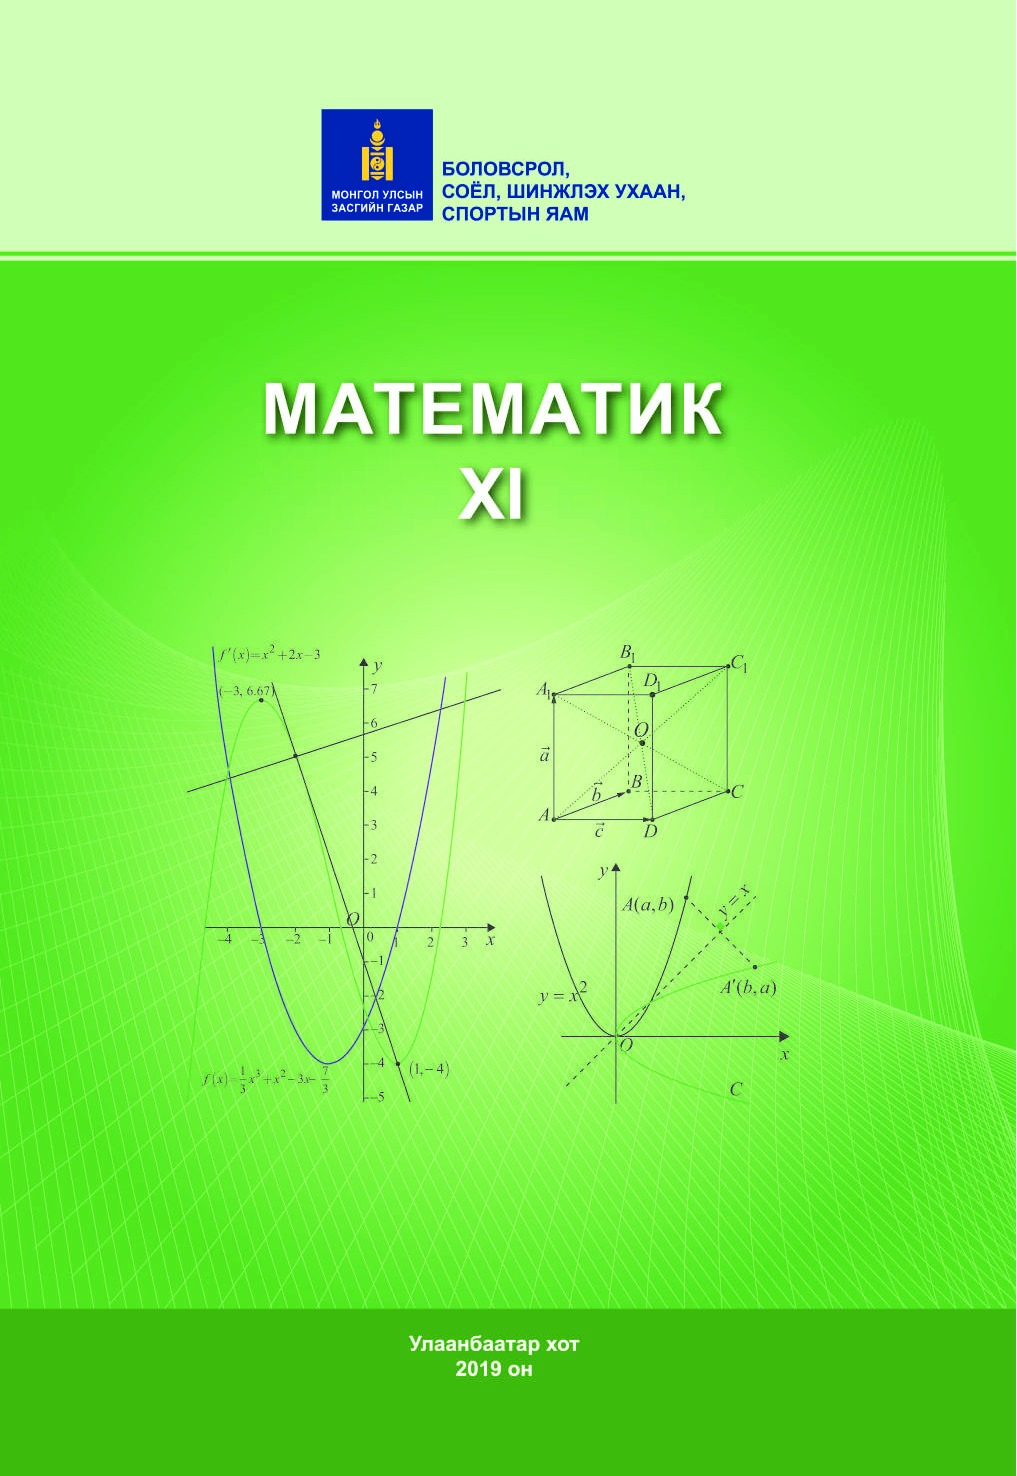 Математик-11 (21-22)